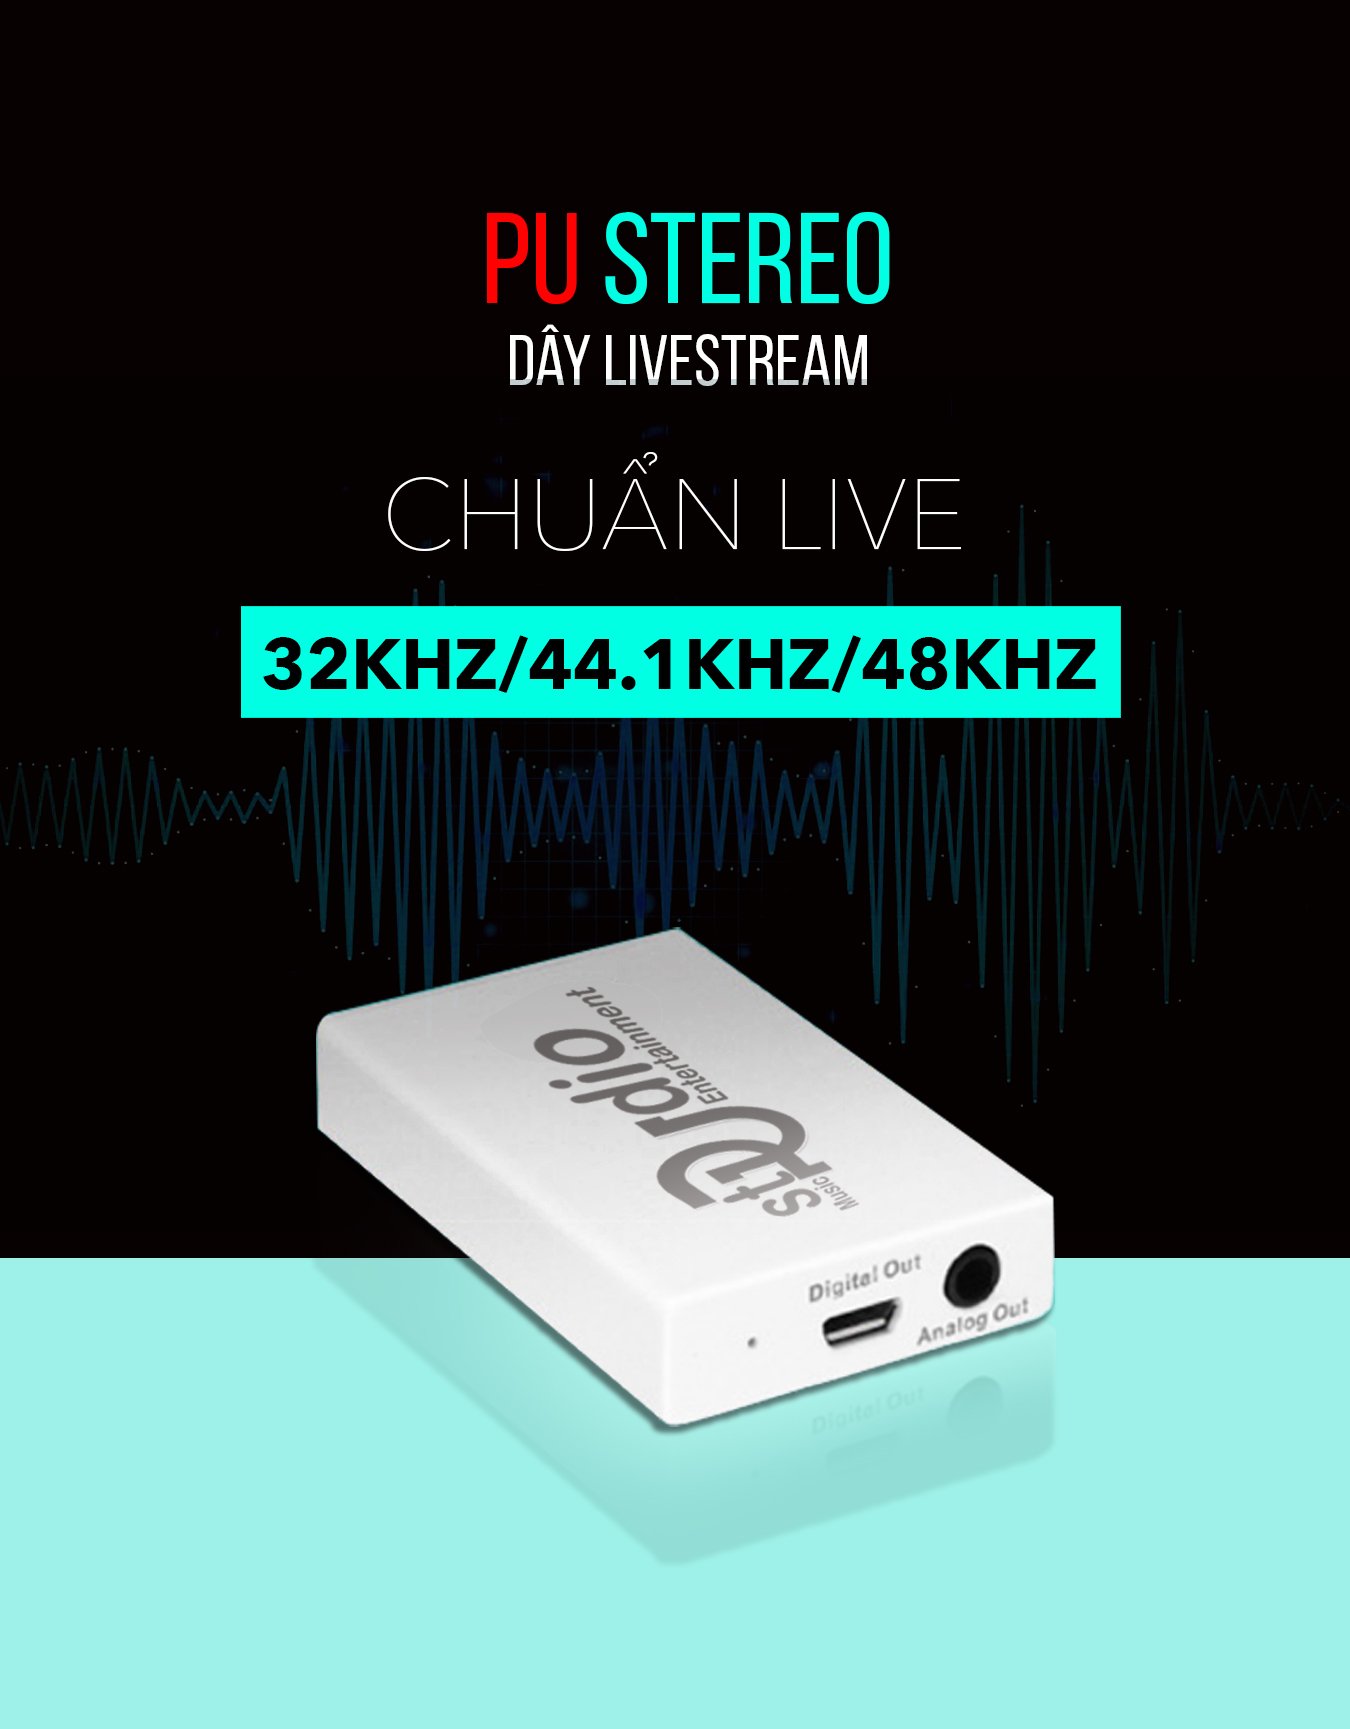 Dây livestream PU Stereo (công nghệ OTG)